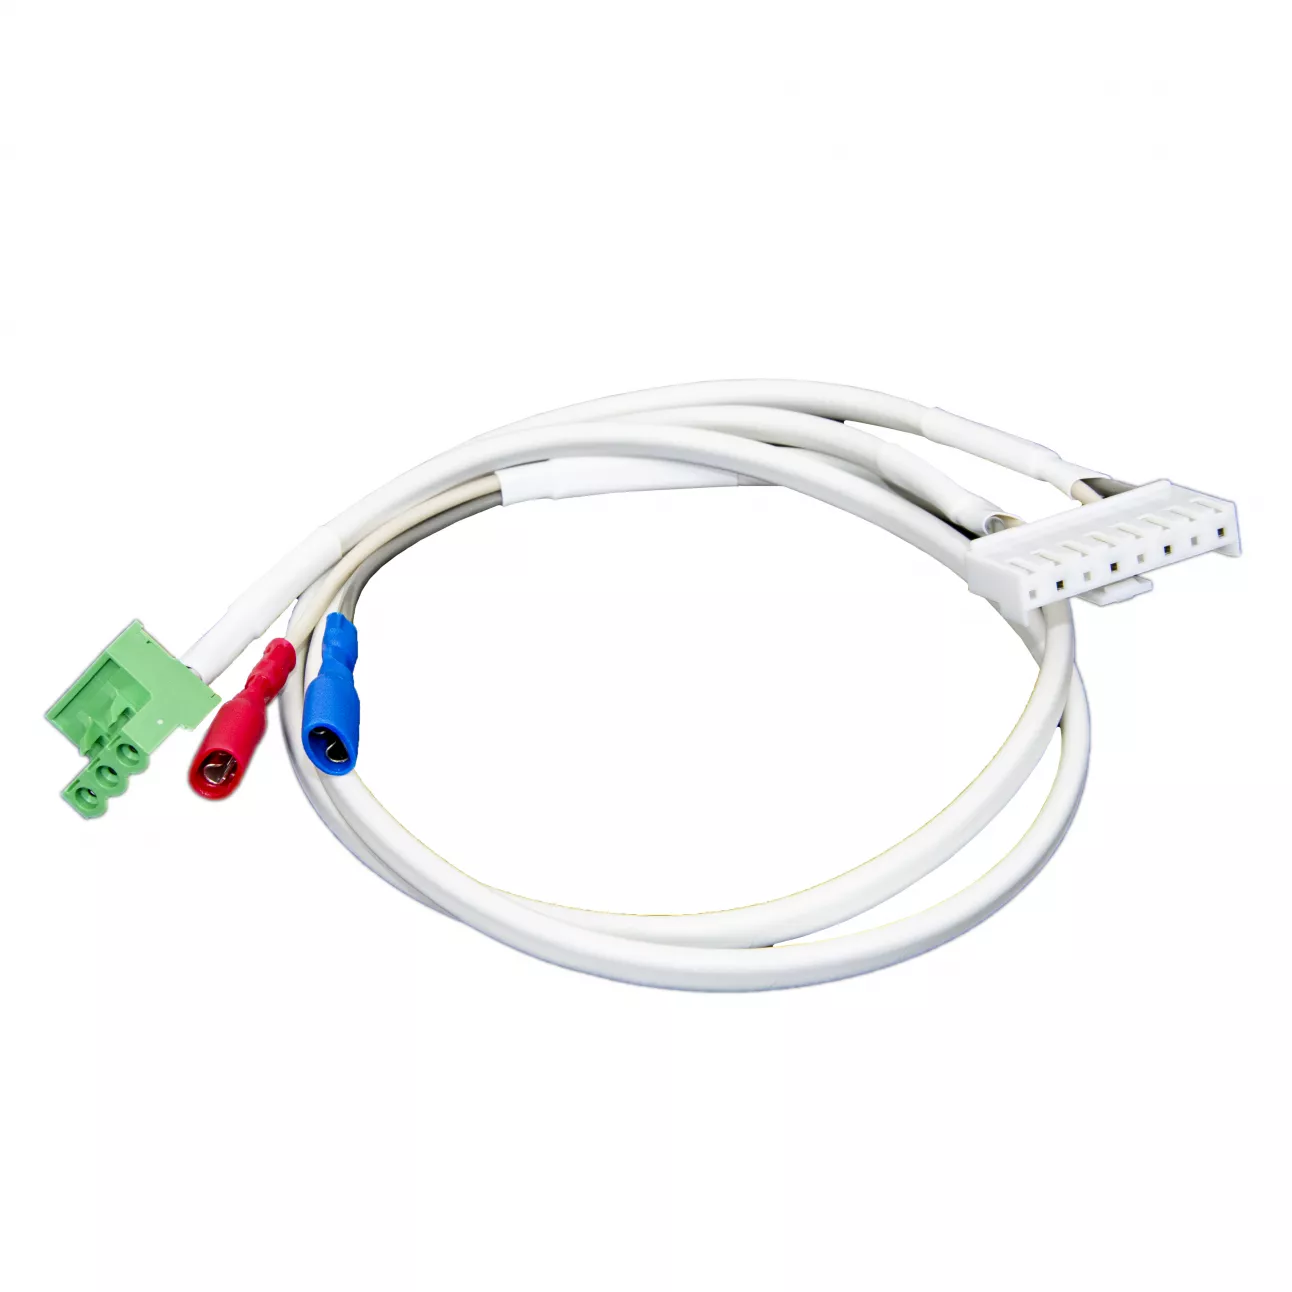 SNR-RPS pwr cable kit PSC-160 - Набор кабелей для RPS без сигнальных контактов: питание 220В, акб, 3PIN. Предназначены для подключения напряжения питания и нагрузки к источнику питания PSC-160A-C. купить в Казани 	Назначение:	Предназначены для подключения напряжения питания, нагрузки и аккумуляторных батарей к и